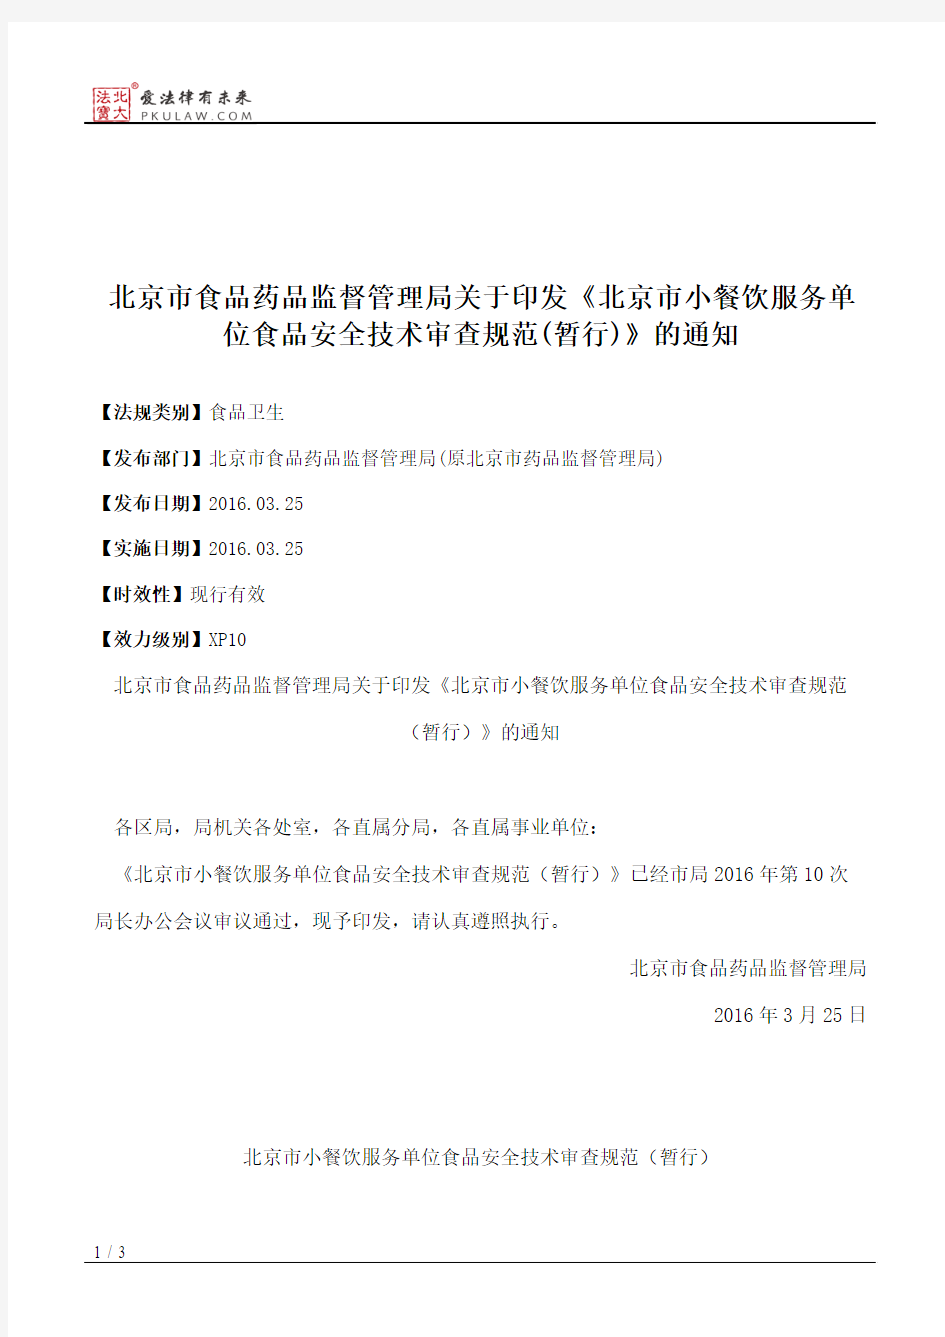 北京市食品药品监督管理局关于印发《北京市小餐饮服务单位食品安